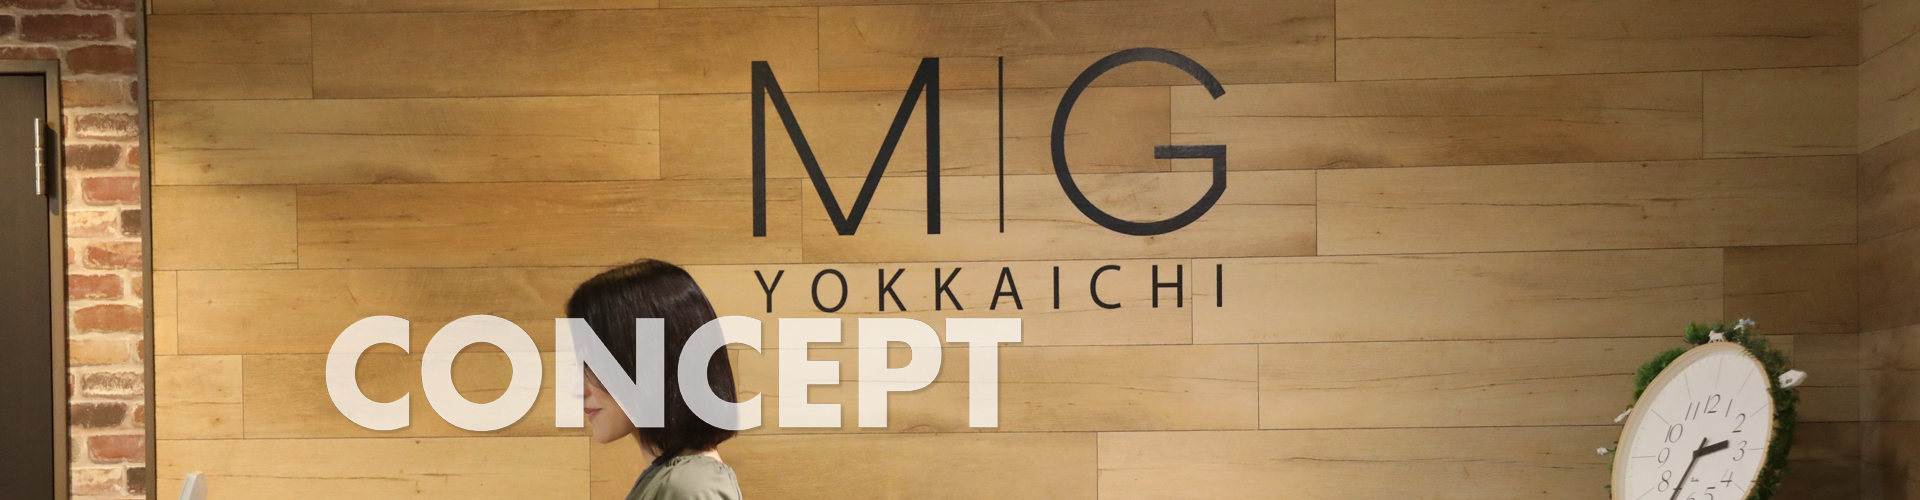 レンタルオフィススペース貸事務所のMG YOKKAICHI